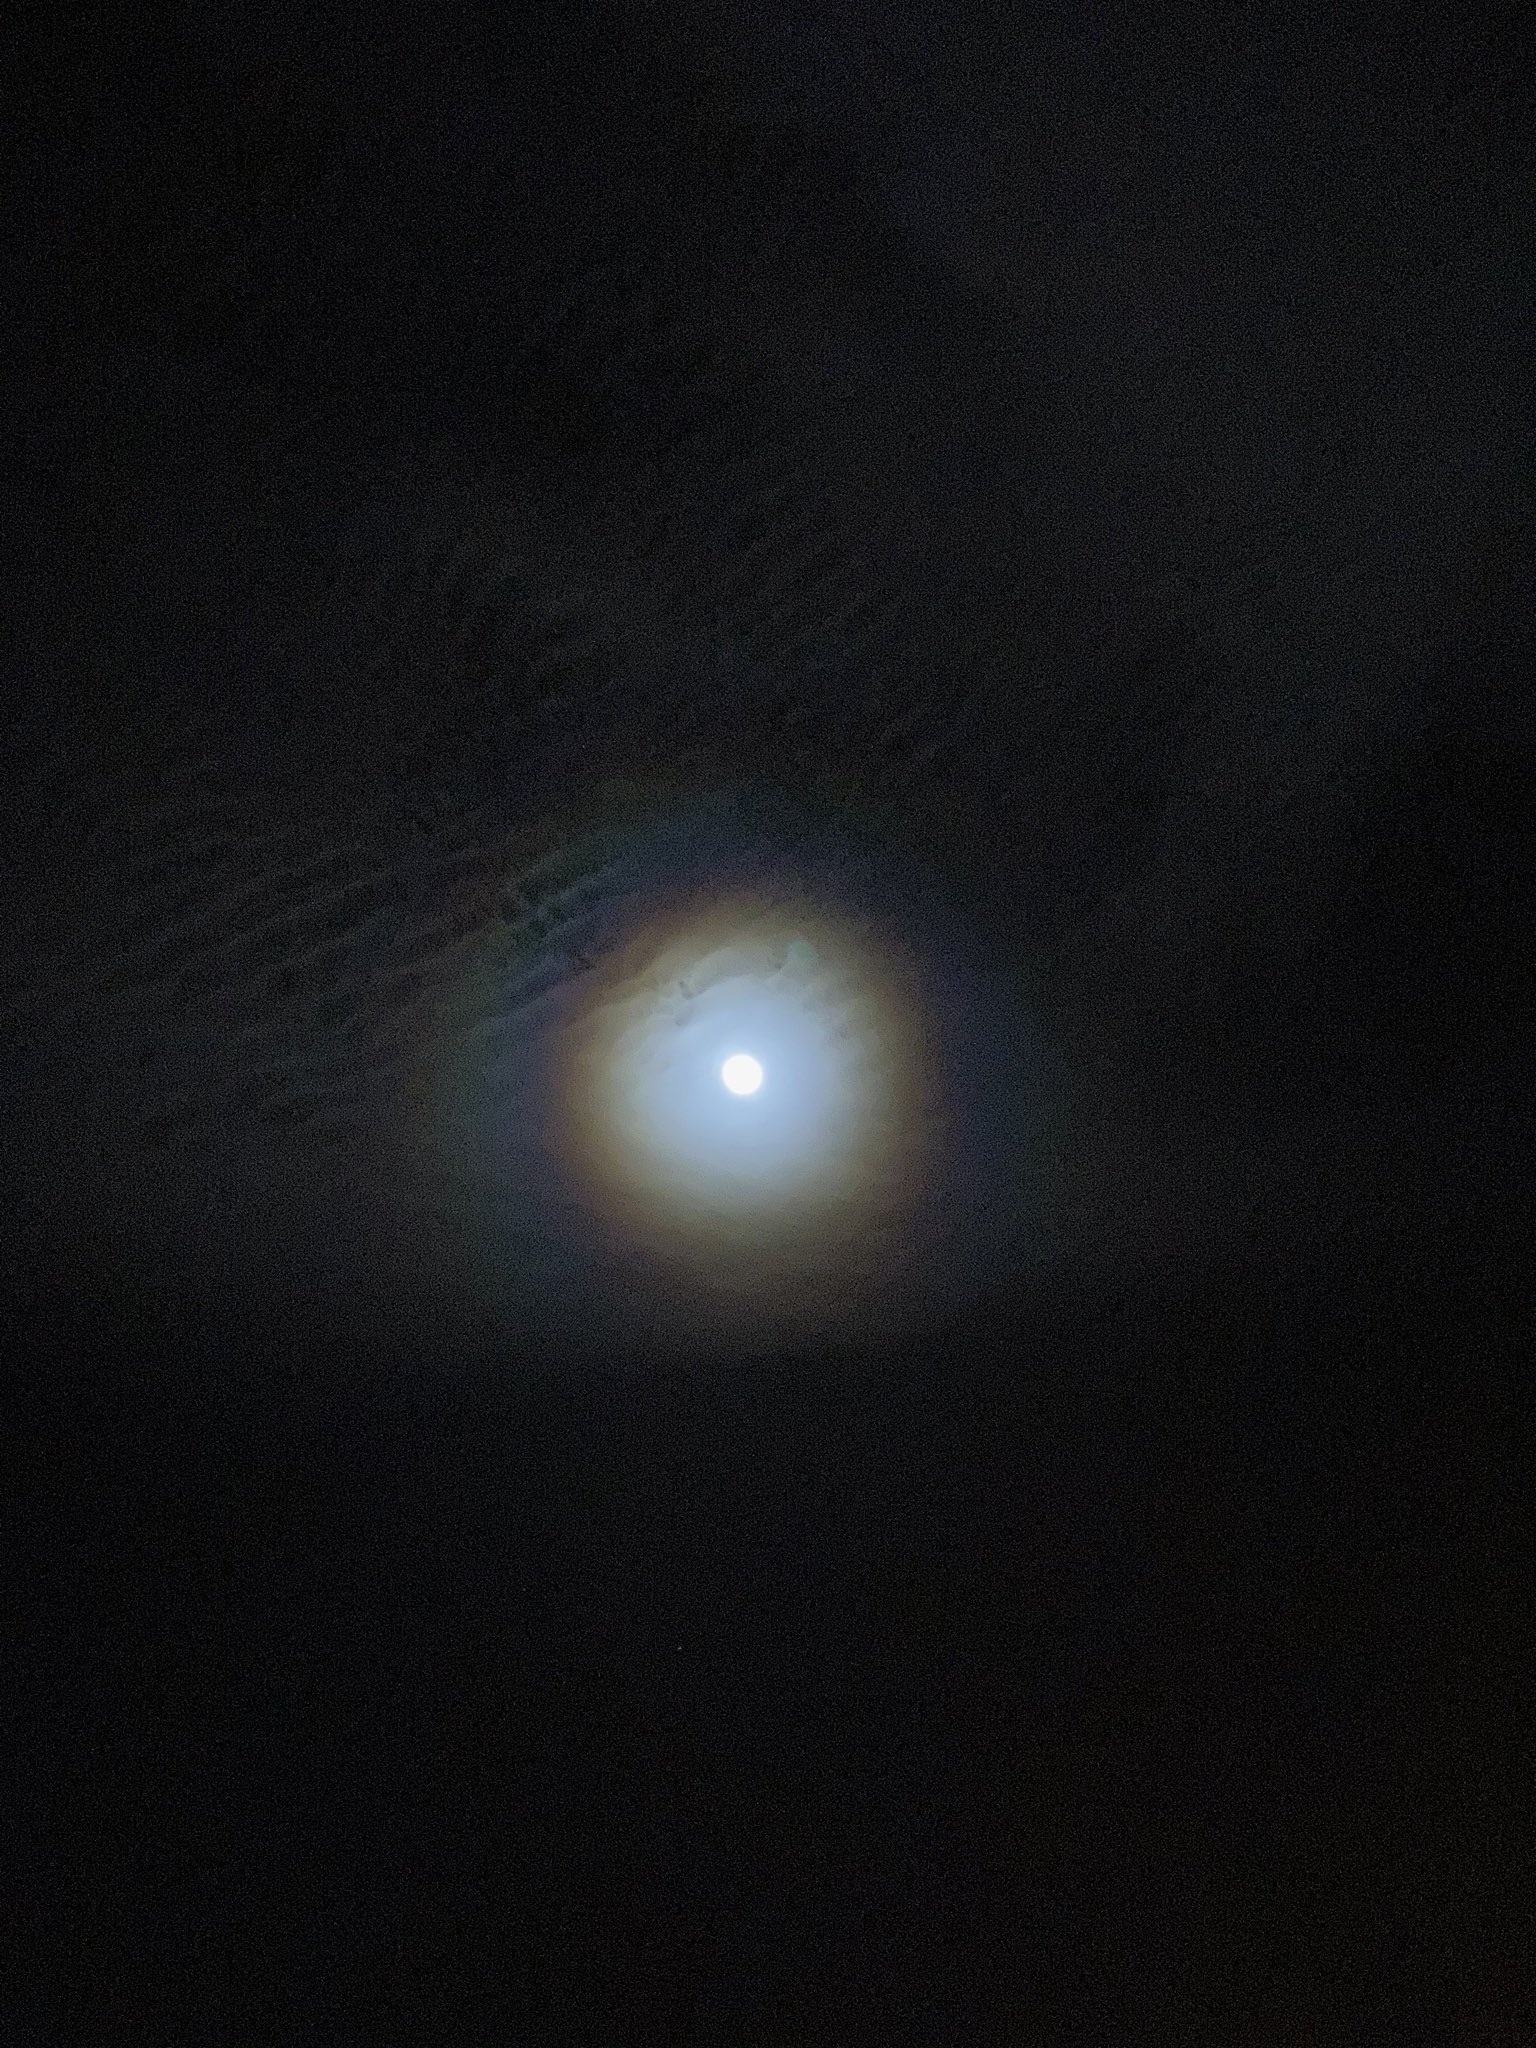 القمر في طور التربيع الأخير يزين السماء بعد منتصف الليل